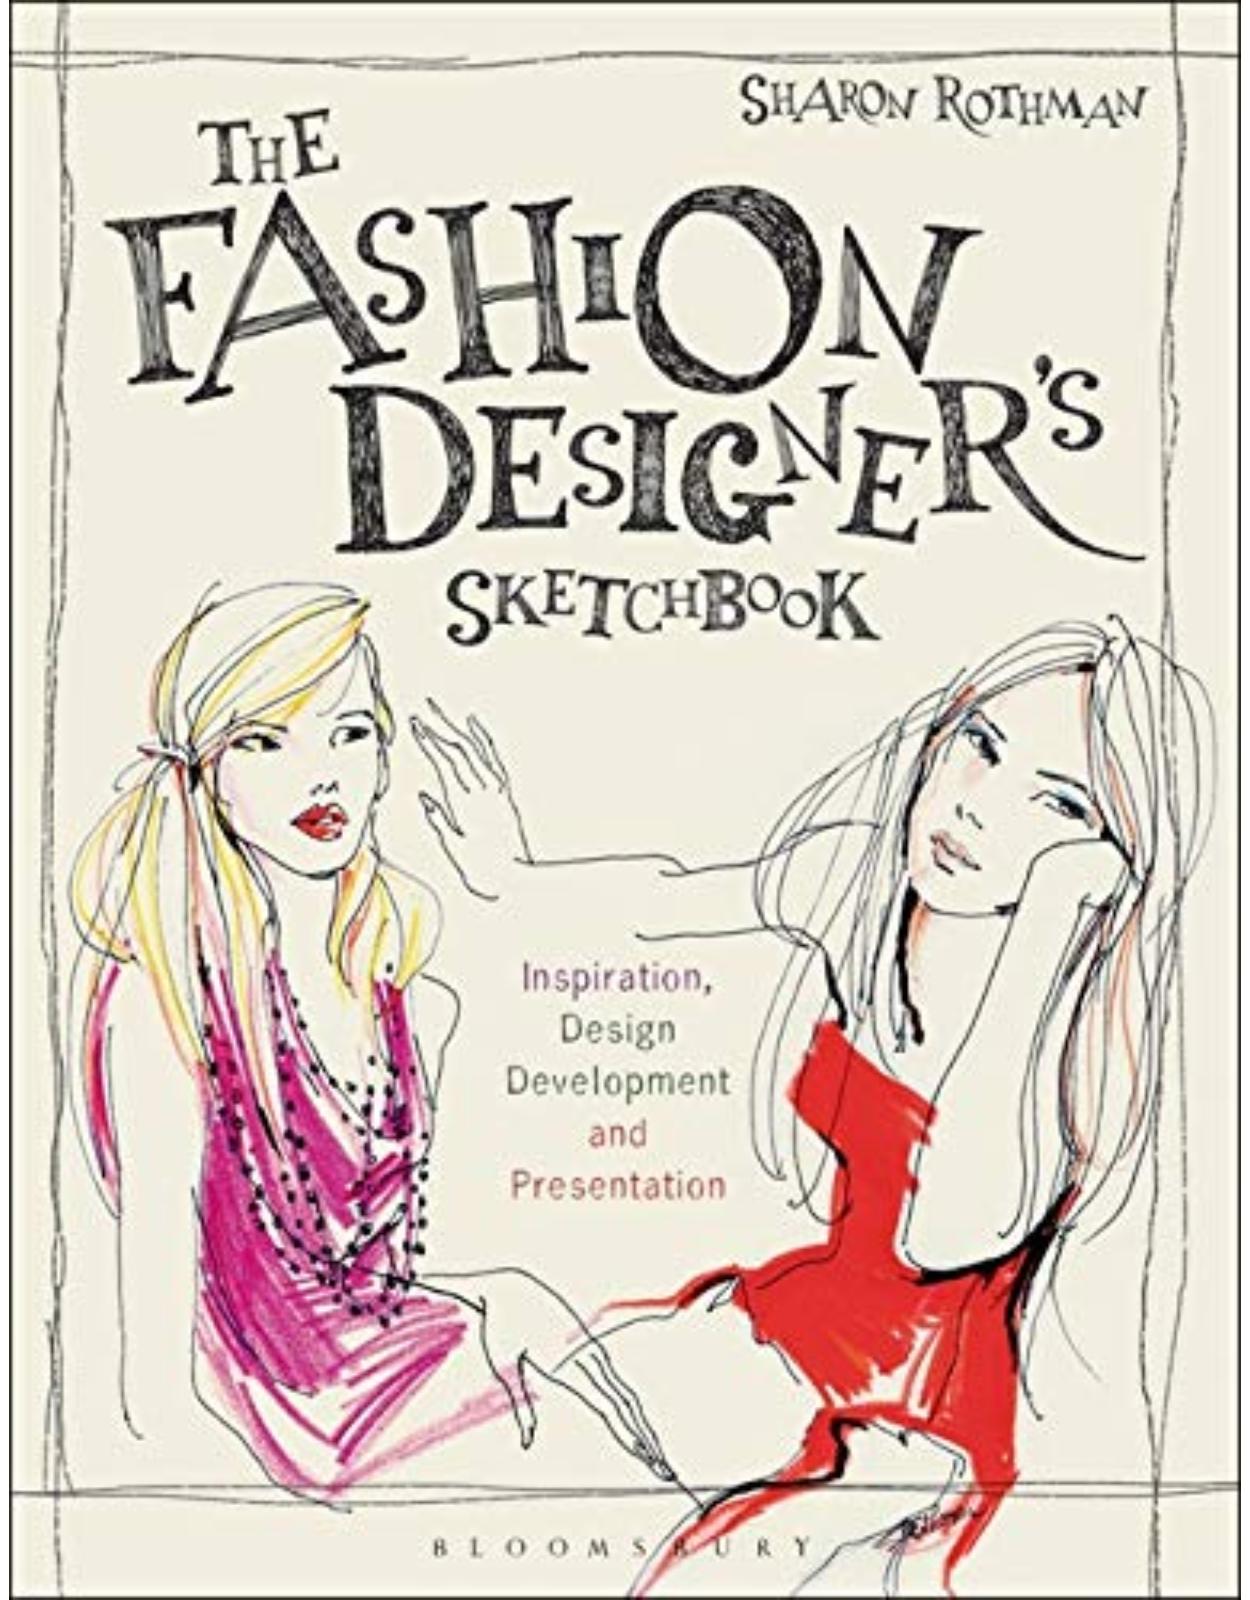 The Fashion Designer's Sketchbook